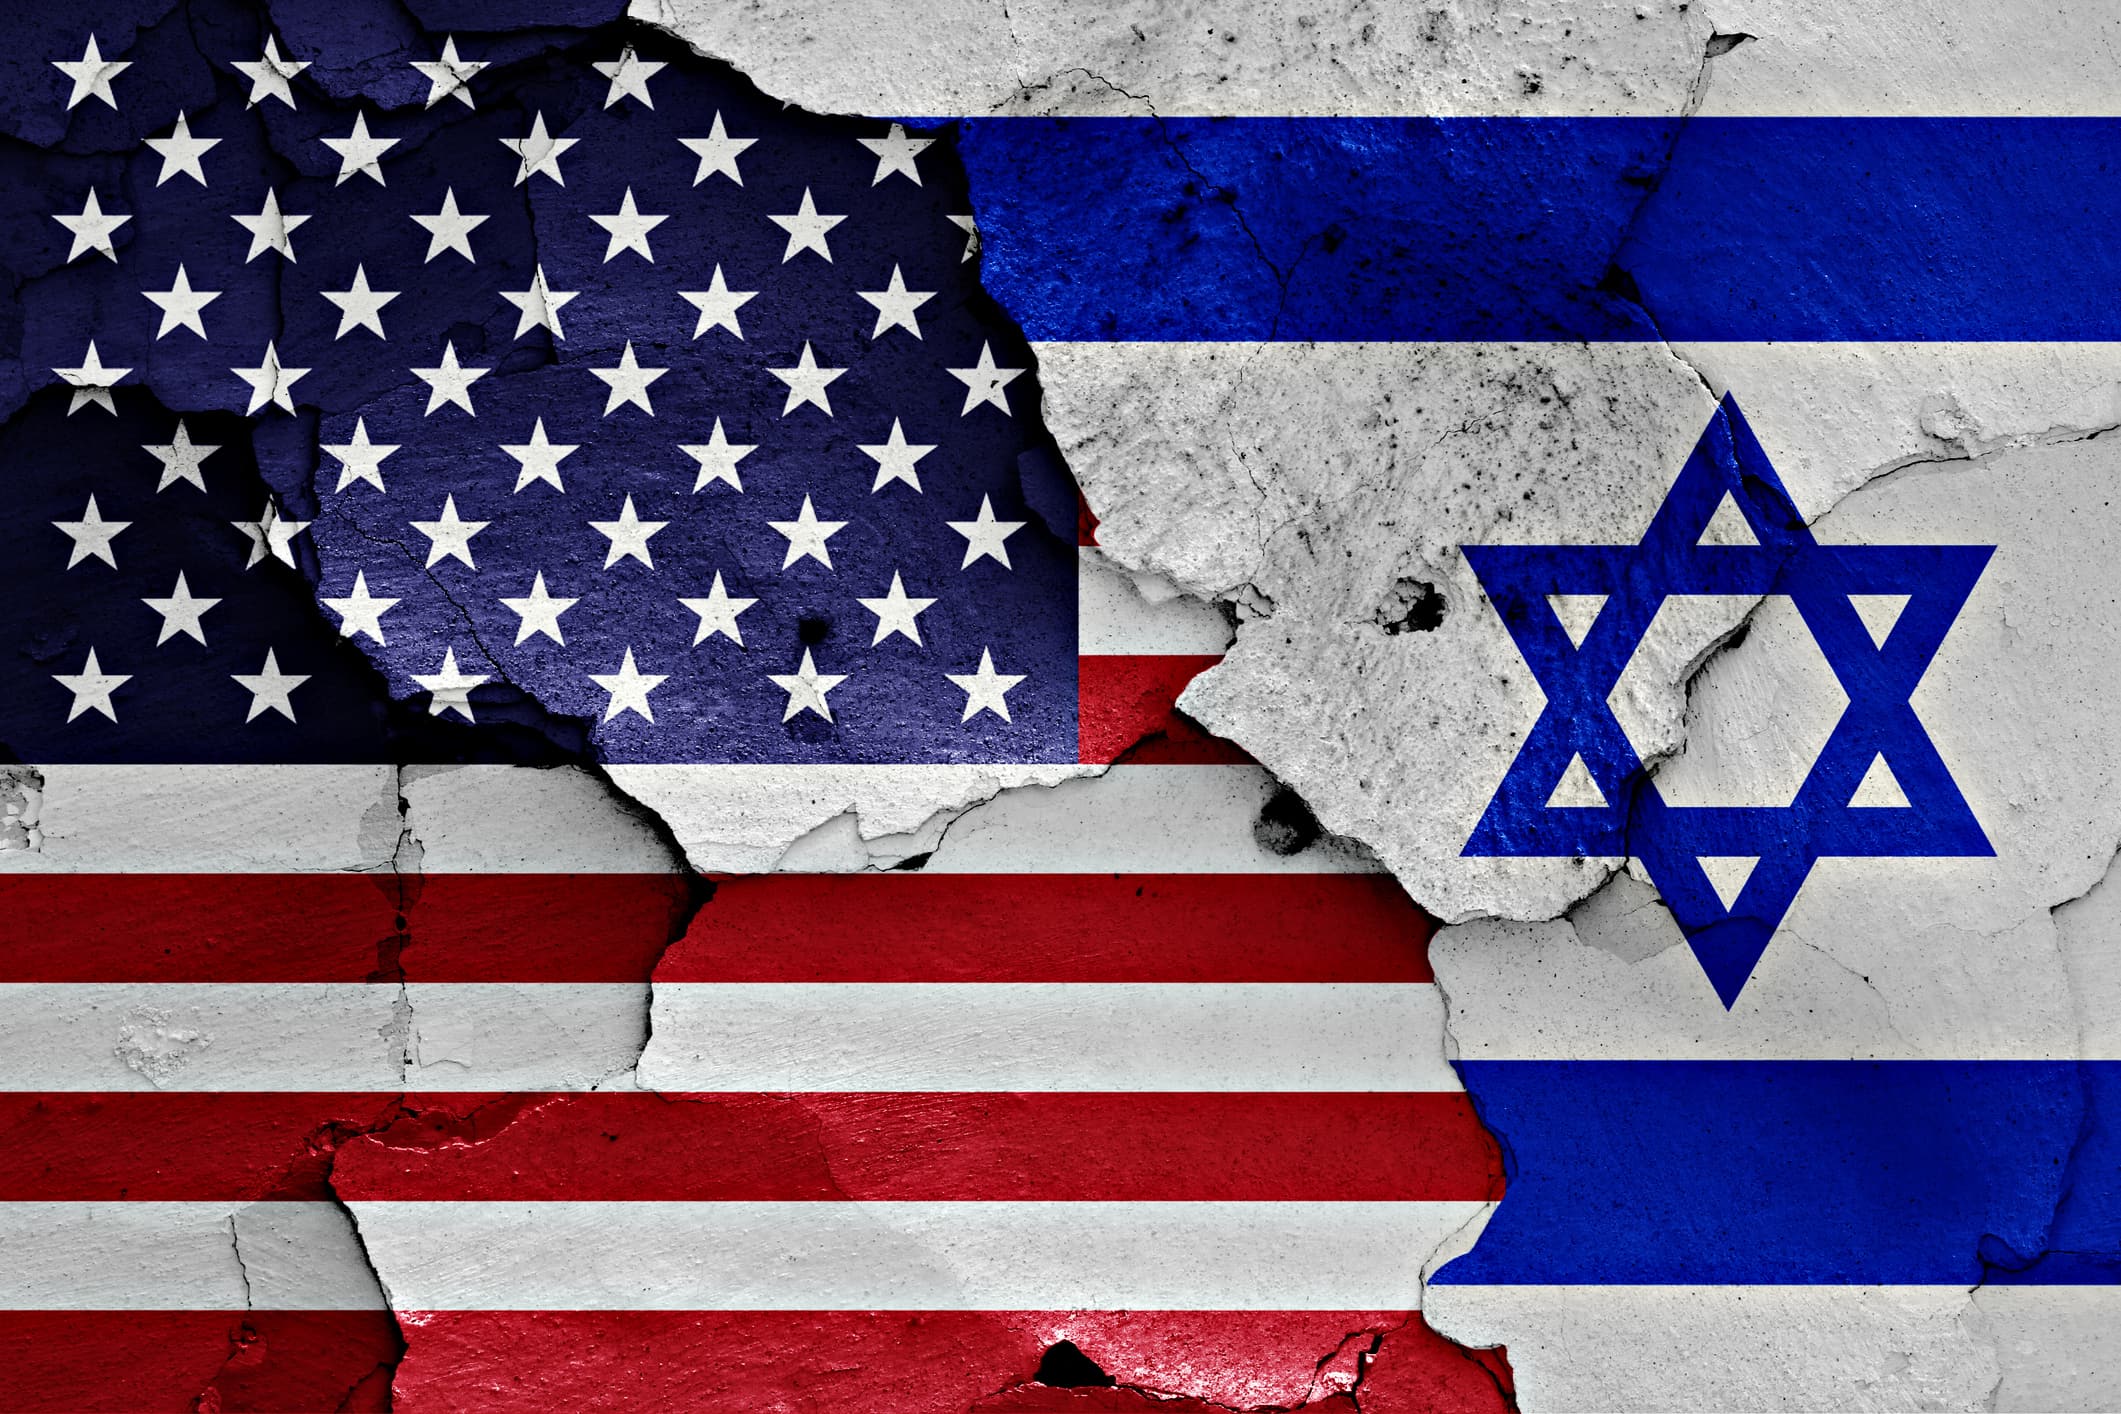 קרע ביחסי ישראל-ארה"ב, אילוסטרציה (צילום: Racide / iStock)